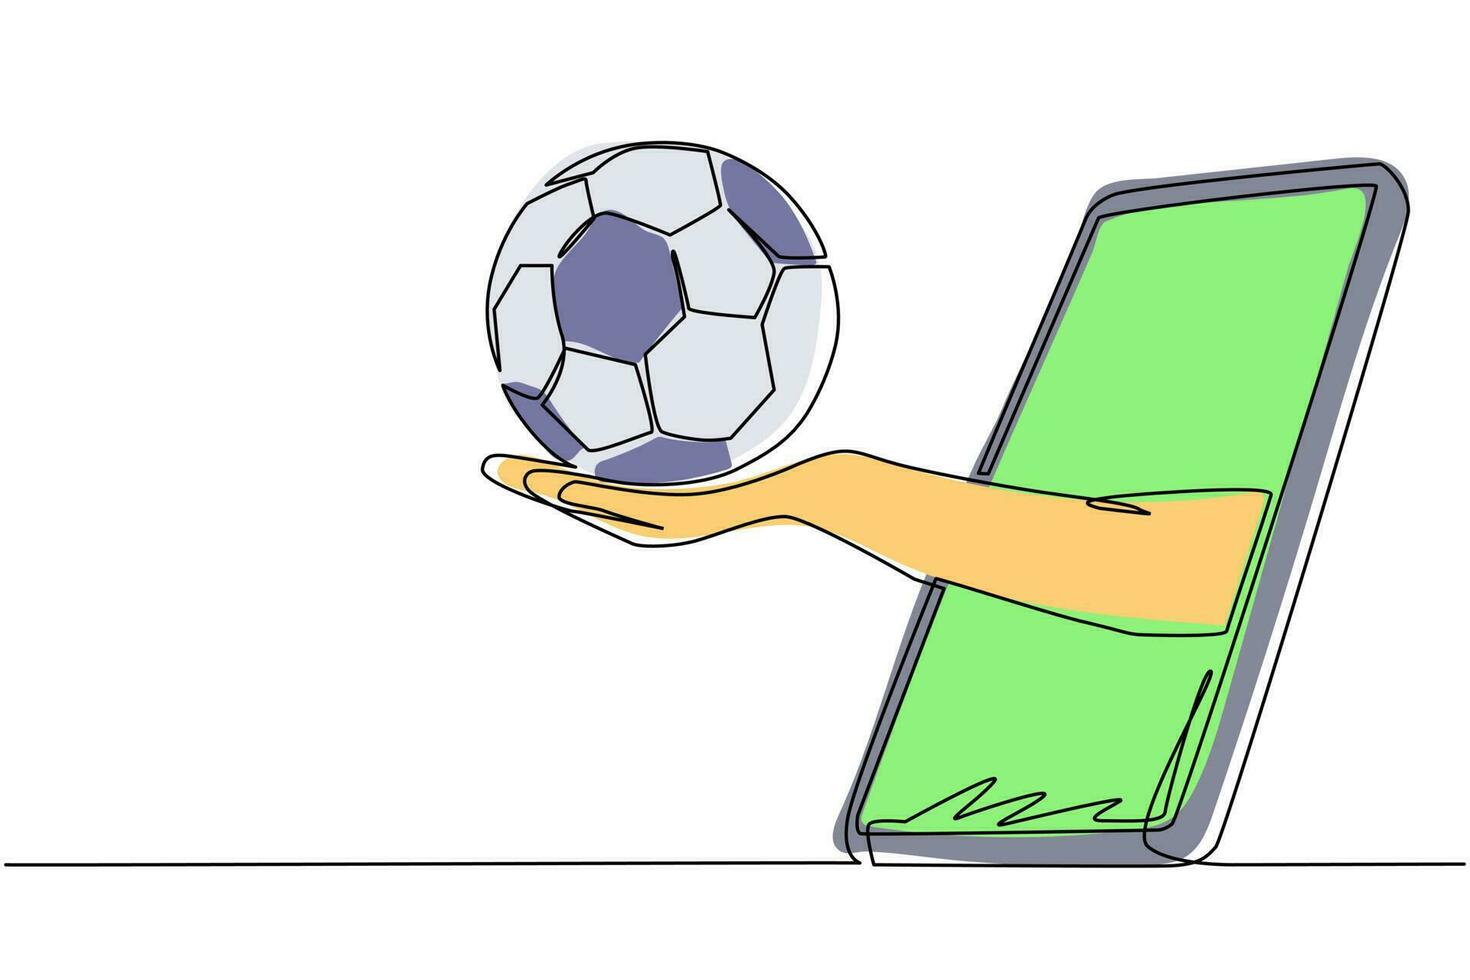 la mano de dibujo de una sola línea continua sostiene el balón de fútbol a través del teléfono inteligente. concepto para juegos en línea, retransmisiones deportivas. juegos de fútbol en línea. Ilustración de vector de diseño gráfico de dibujo de una línea dinámica